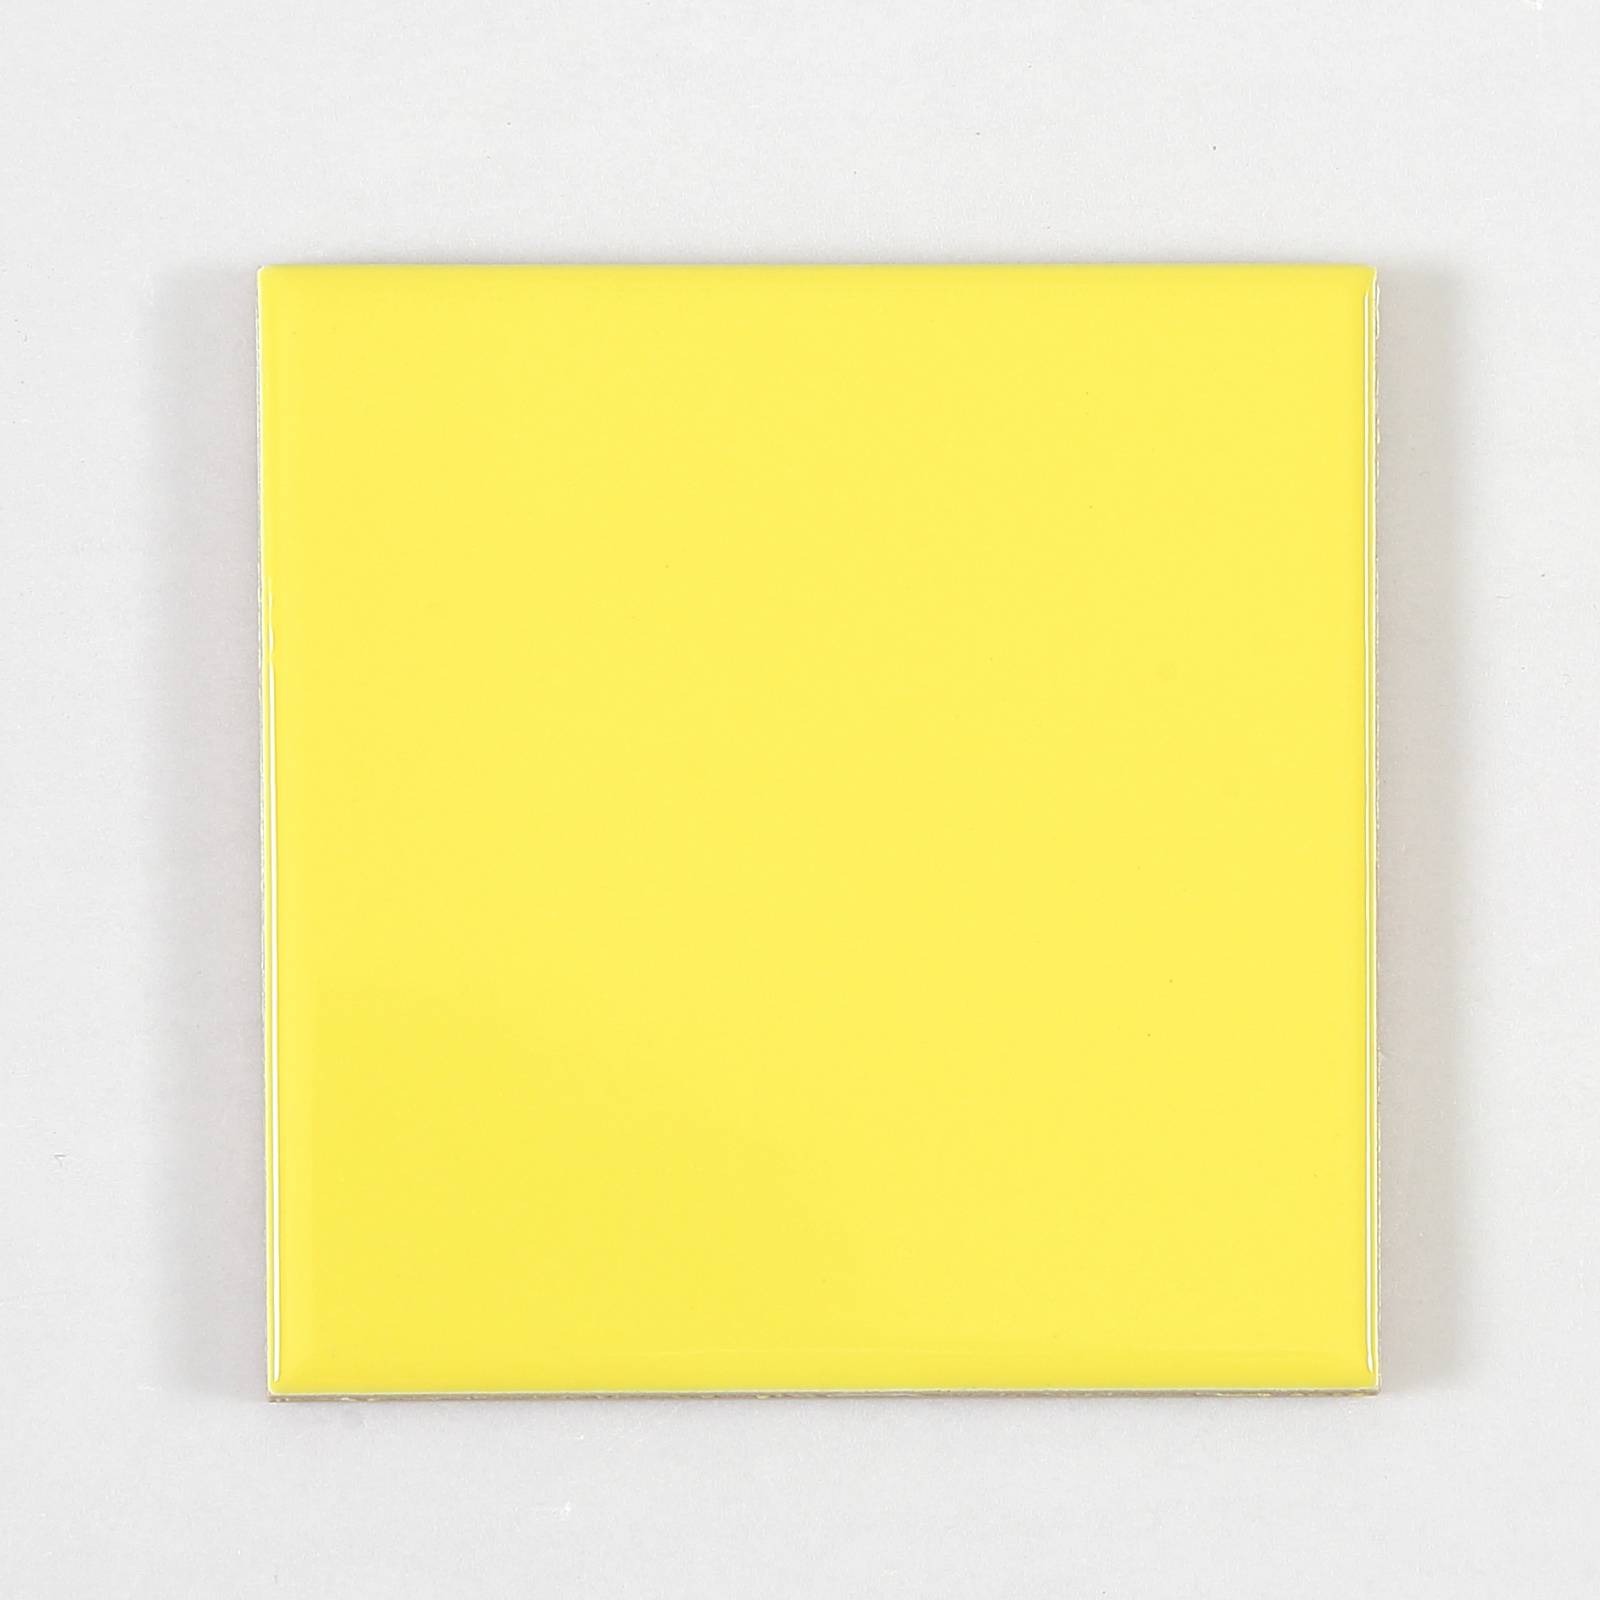 Gạch thẻ trang trí màu vàng bóng phẳng KT 100x100mm V1105